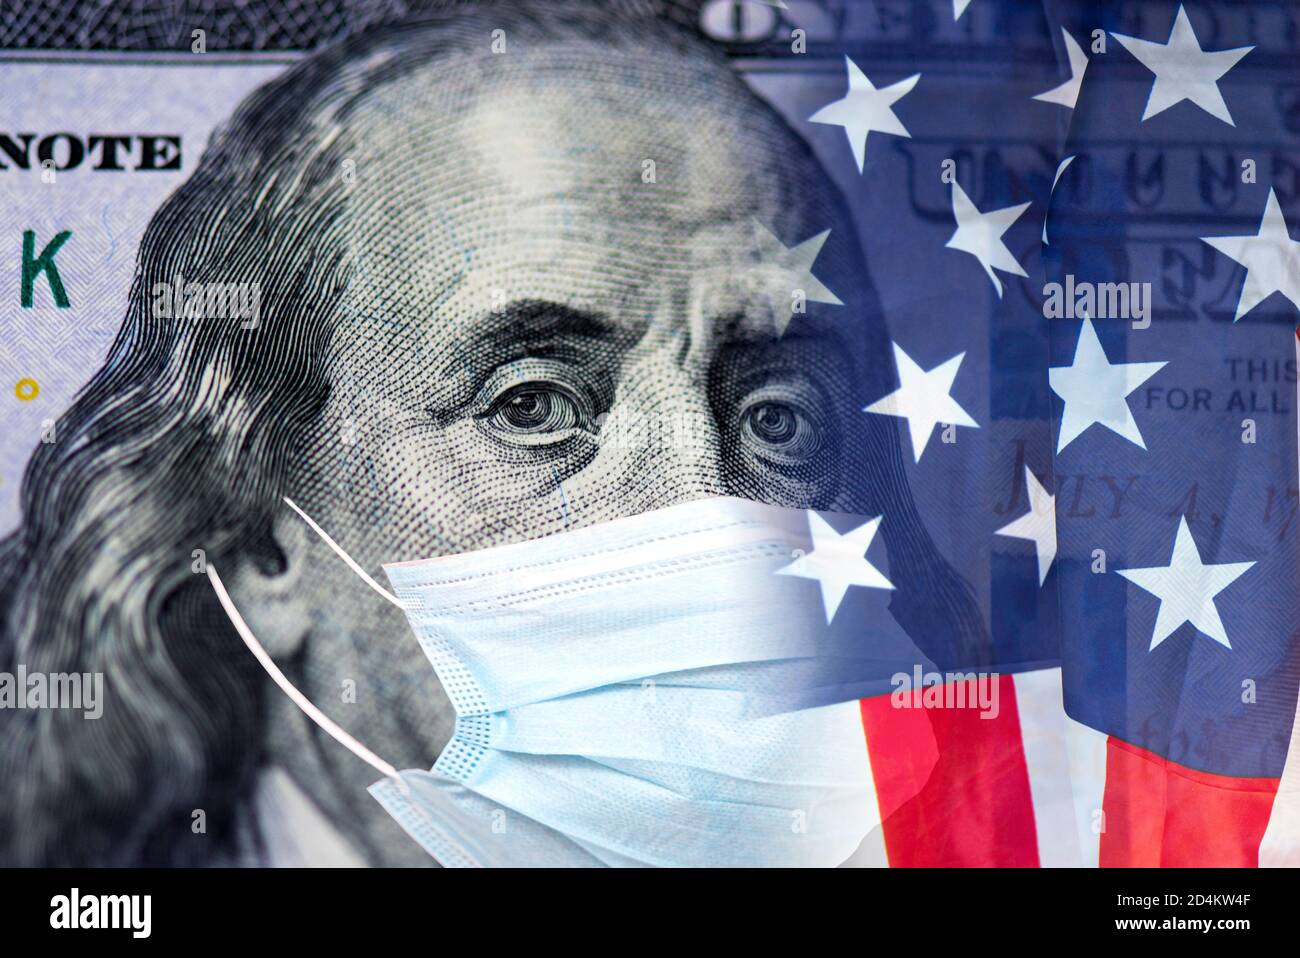 Billet d'argent dollar américain avec masque facial et drapeau américain, image de concept sur COVID - 19 et pandémie Banque D'Images